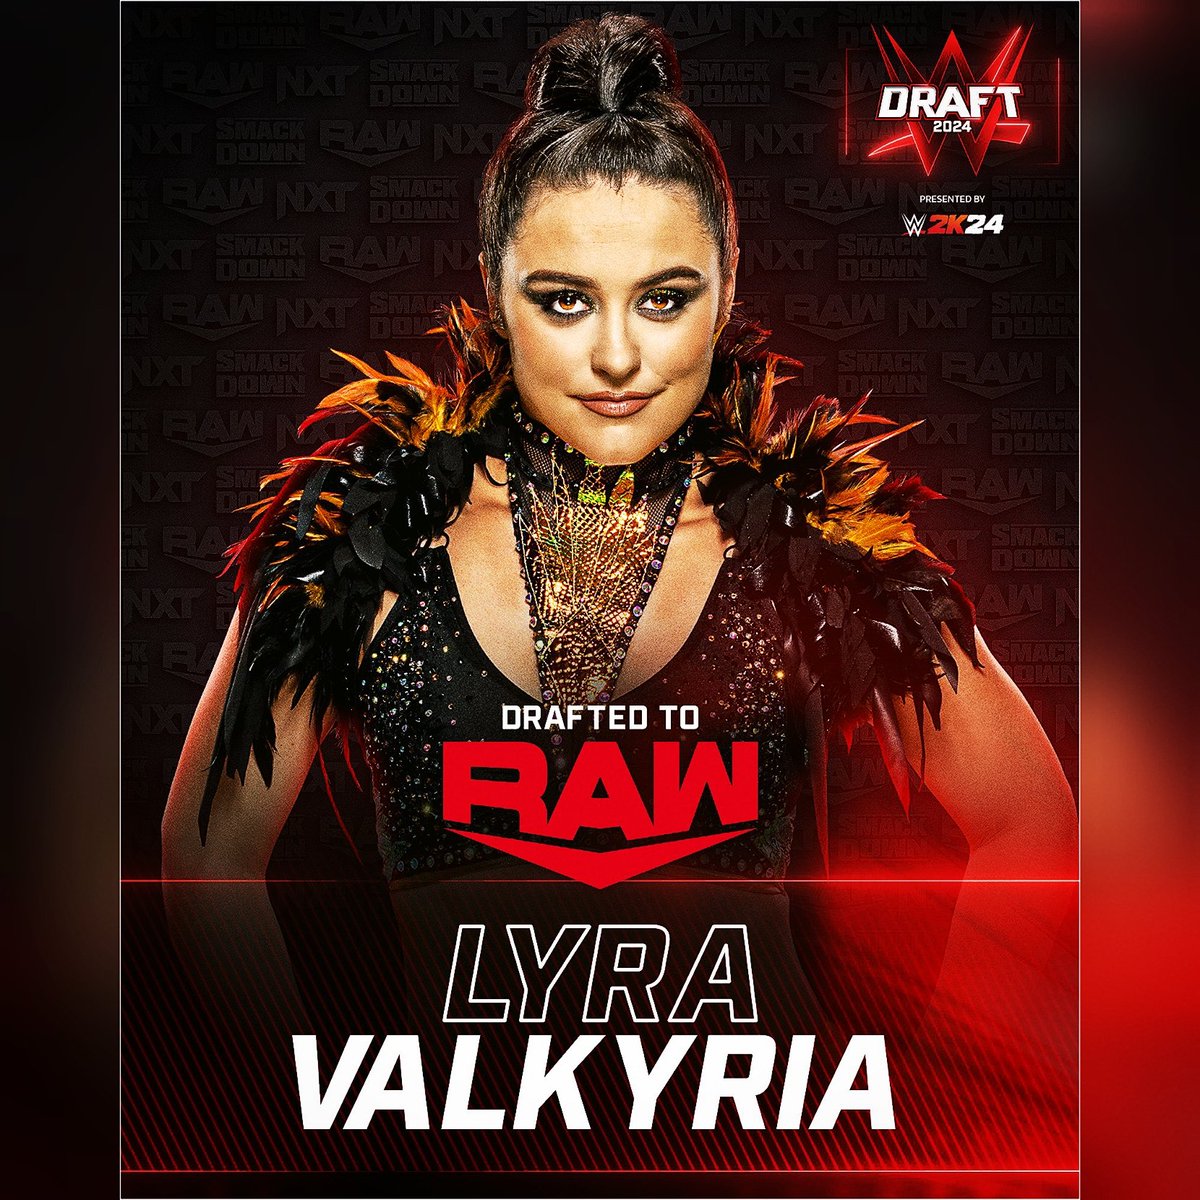 ❤️🔥 @Real_Valkyria 
#WWE #WWERaw #WWEedits #lyravalkyria #YSDECR #YaSoyDetectableEnCualquierRadar